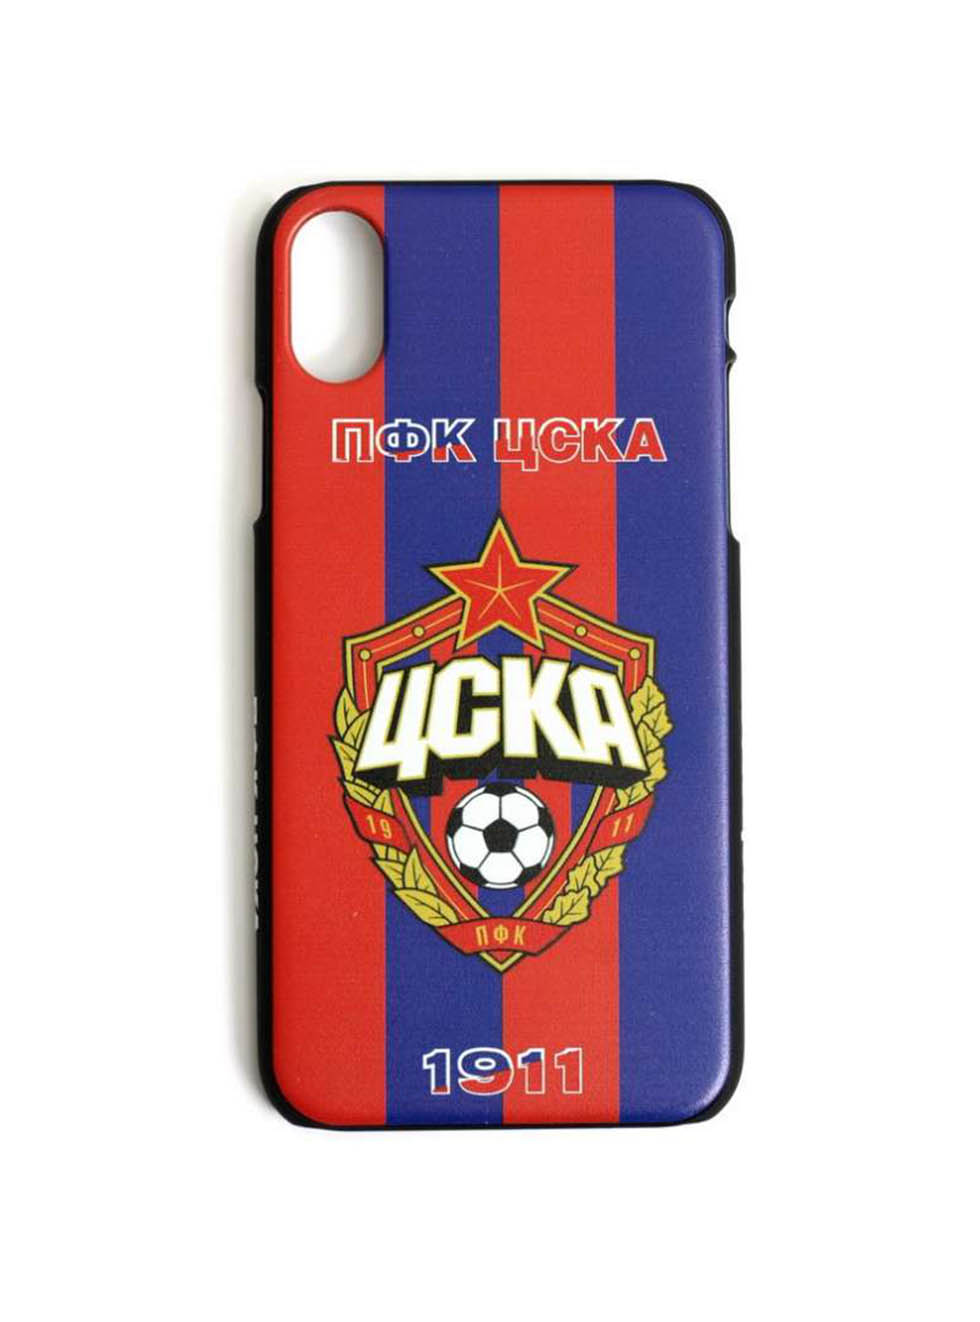 Клип-кейс ПФК ЦСКА 1911 для iPhone, цвет красно-синий (IPhone 6 Plus)